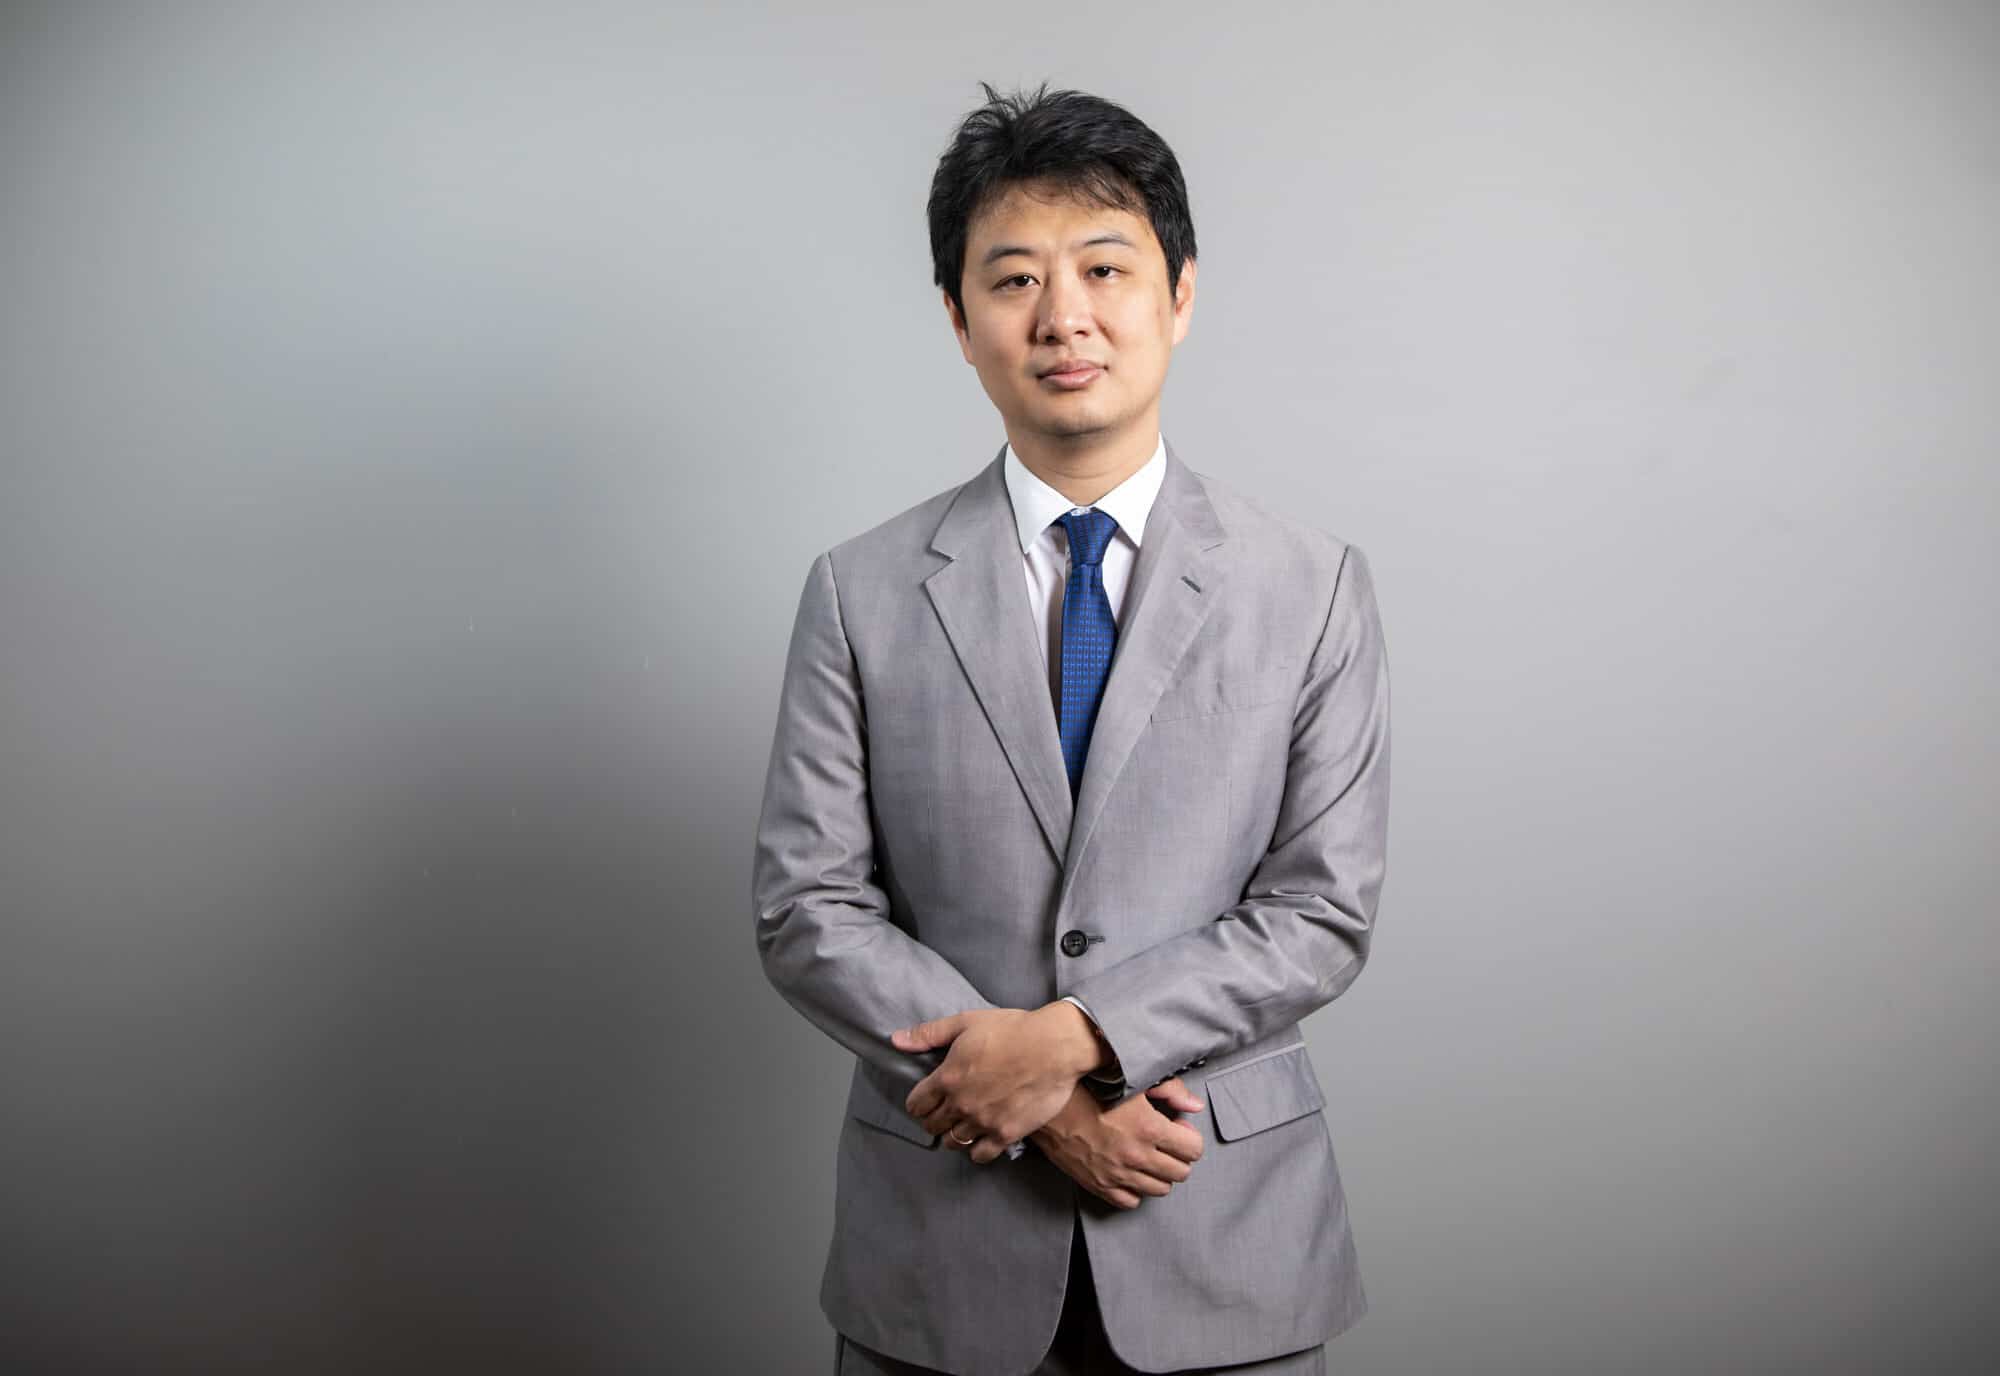 Dr. Marcus Pai 1